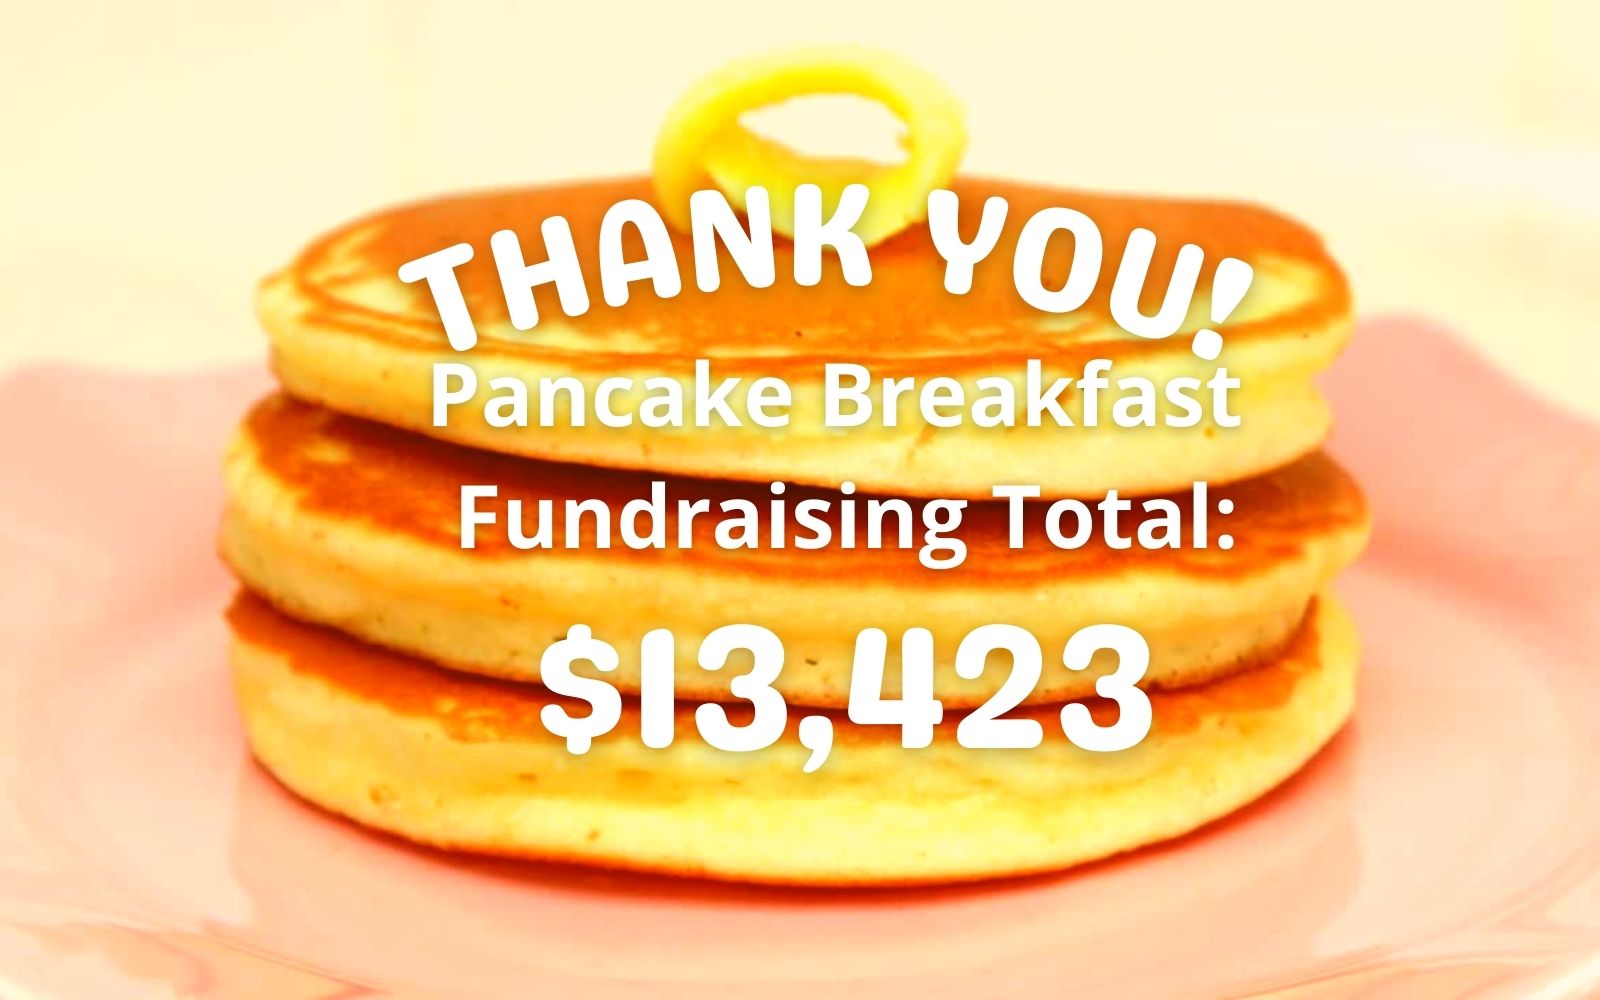 Total Raised for Pancake Breakfast Fundraiser